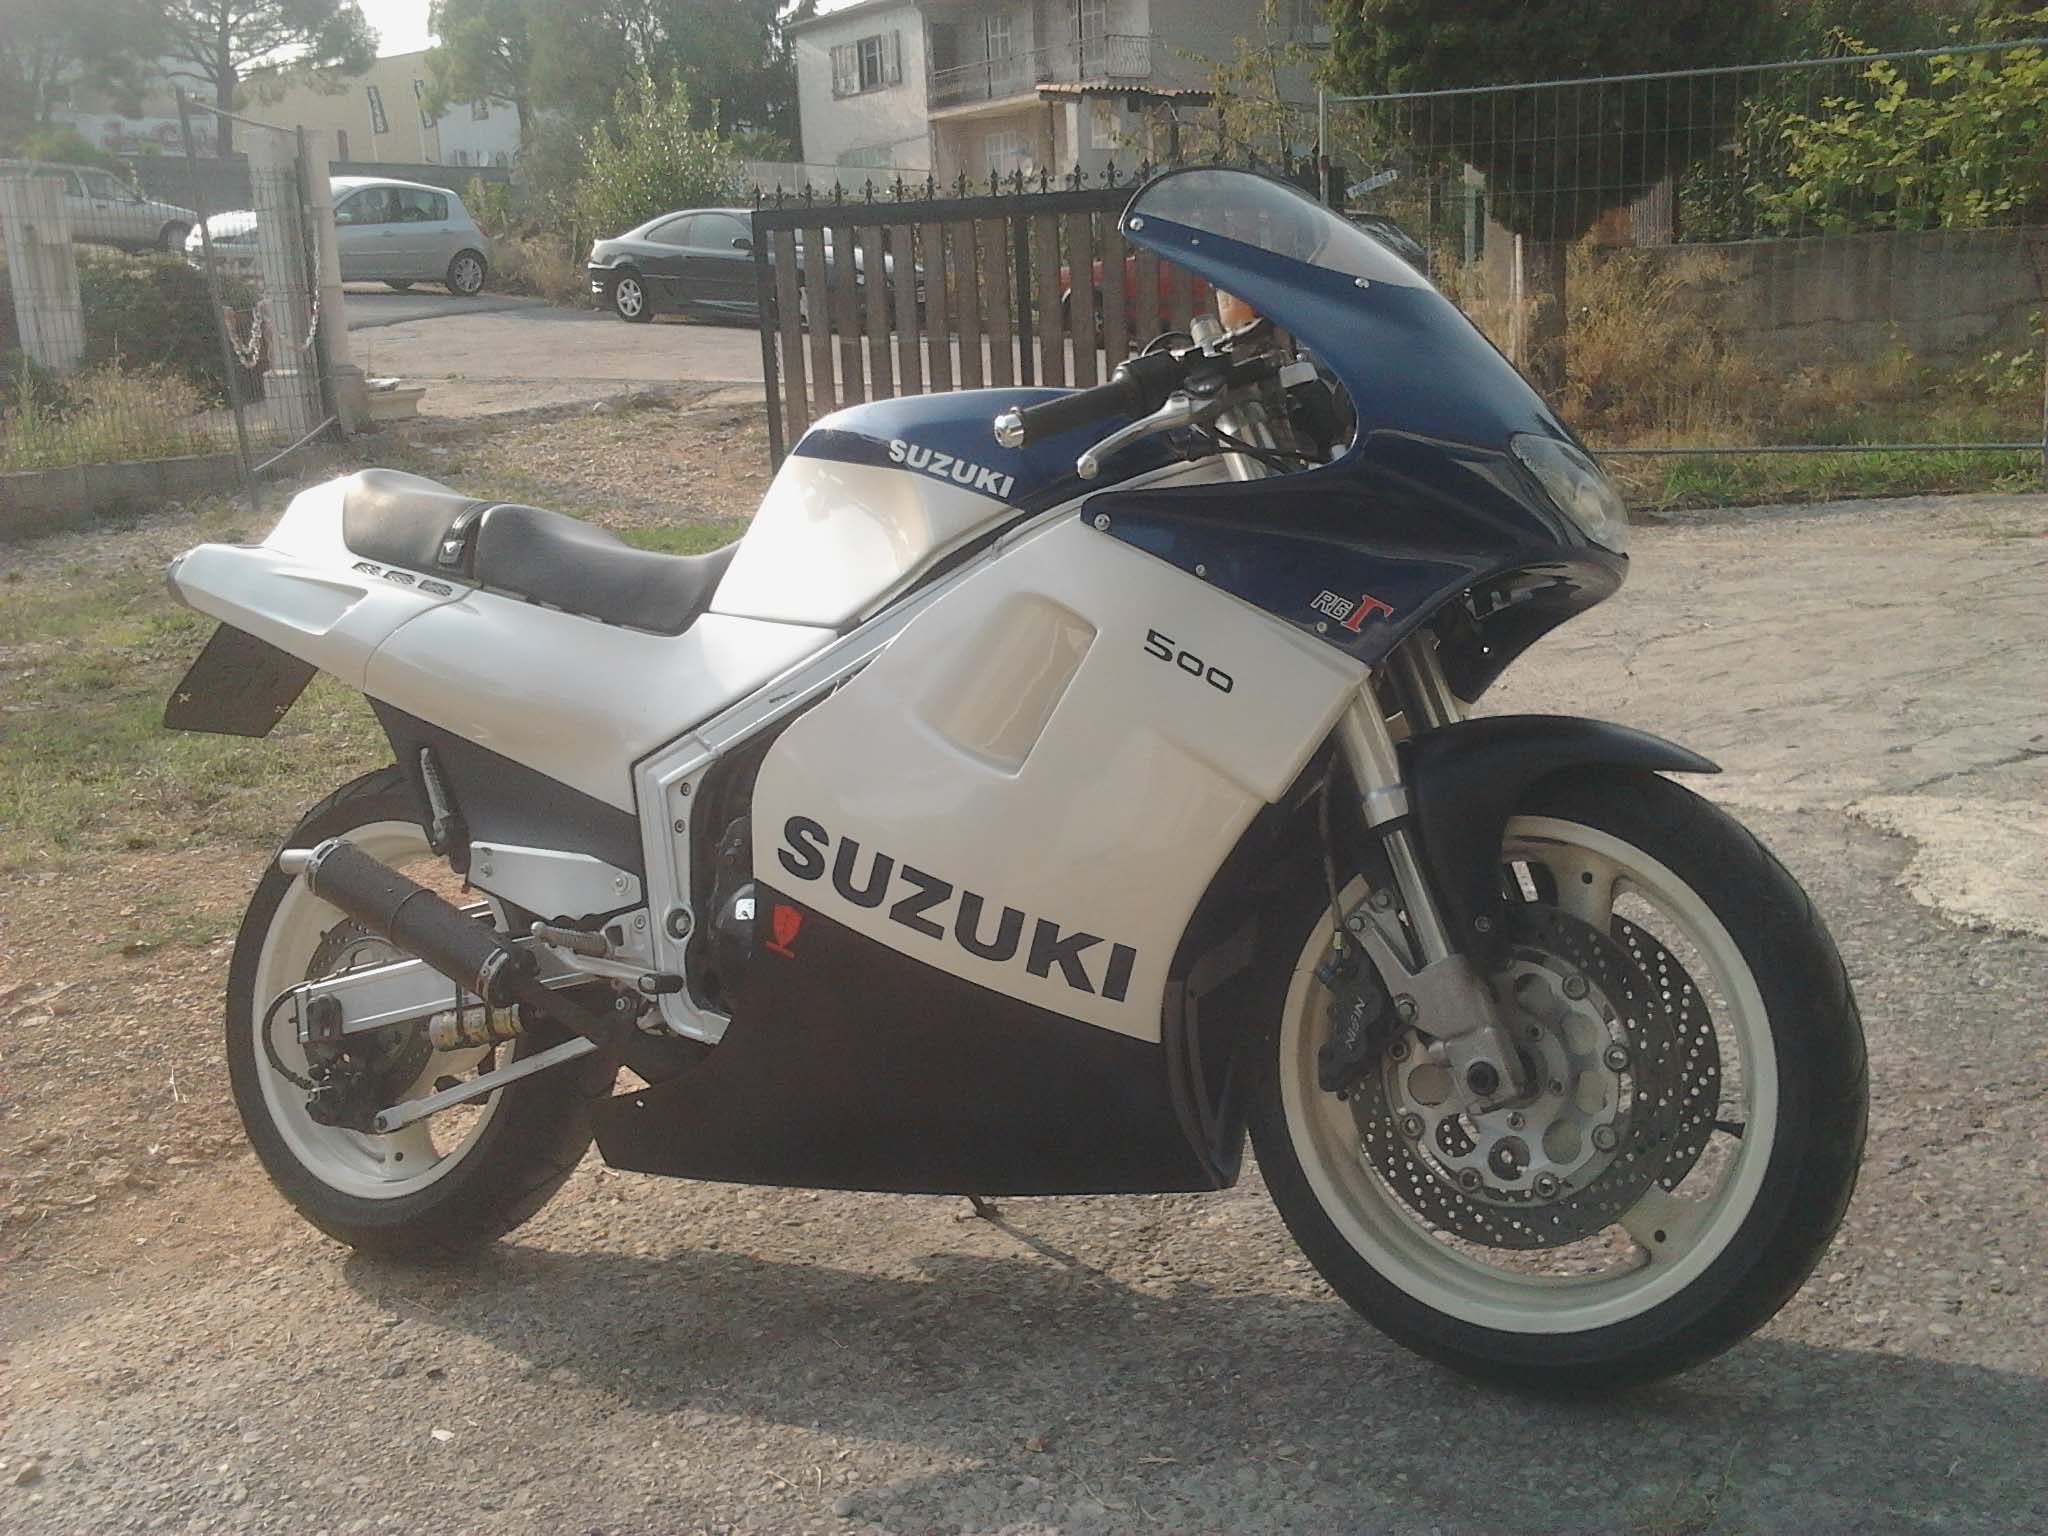 FranzaSport, Suzuki 500RG